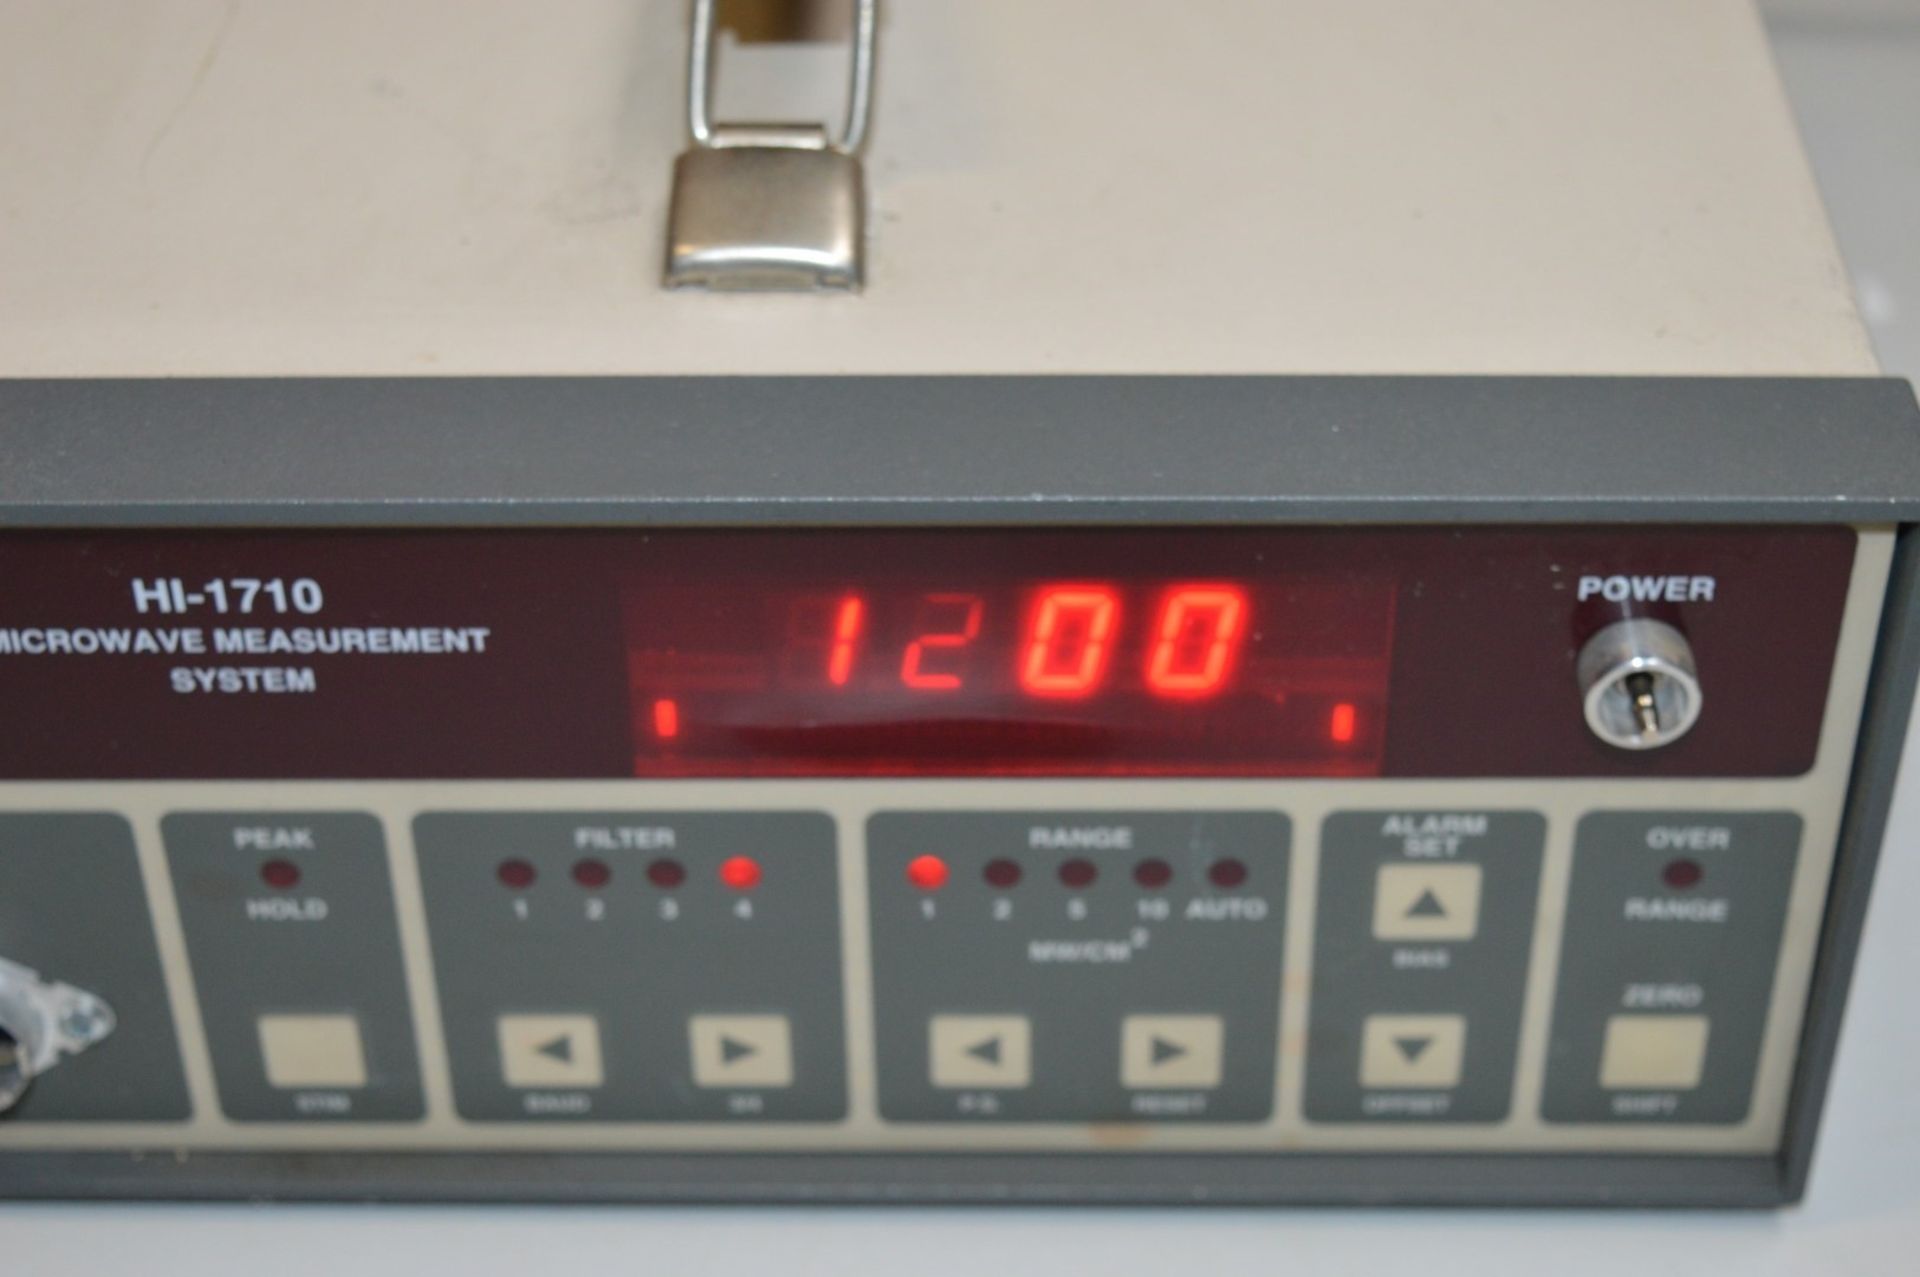 1 HOLDAY Microwave Measurement System - Model HI-1710 - Vintage Test Equipment - CL011 - Ref - Image 3 of 6